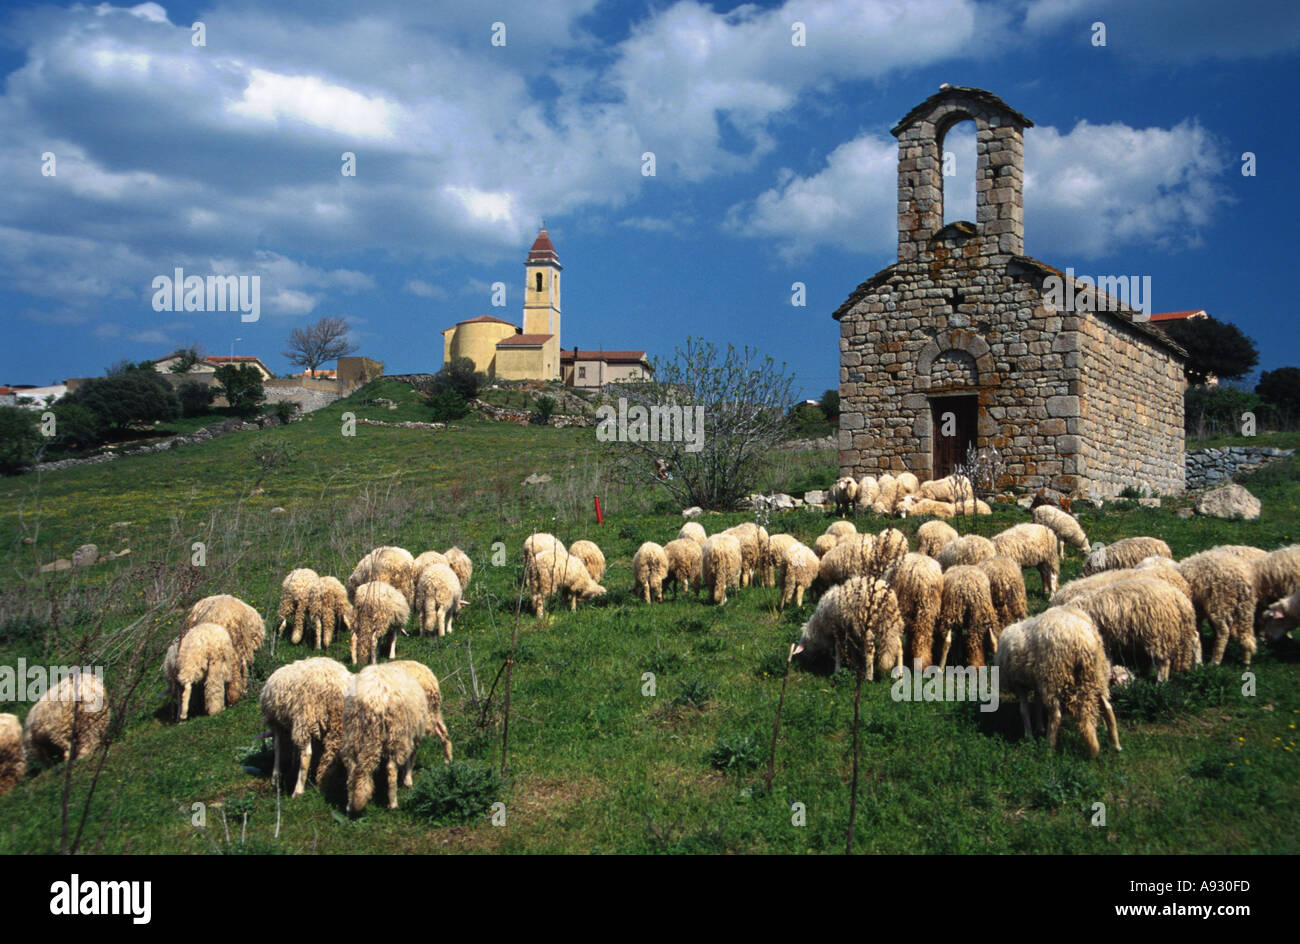 Italy Sardinia scenic with church and chapell near Onani sheeps Stock Photo